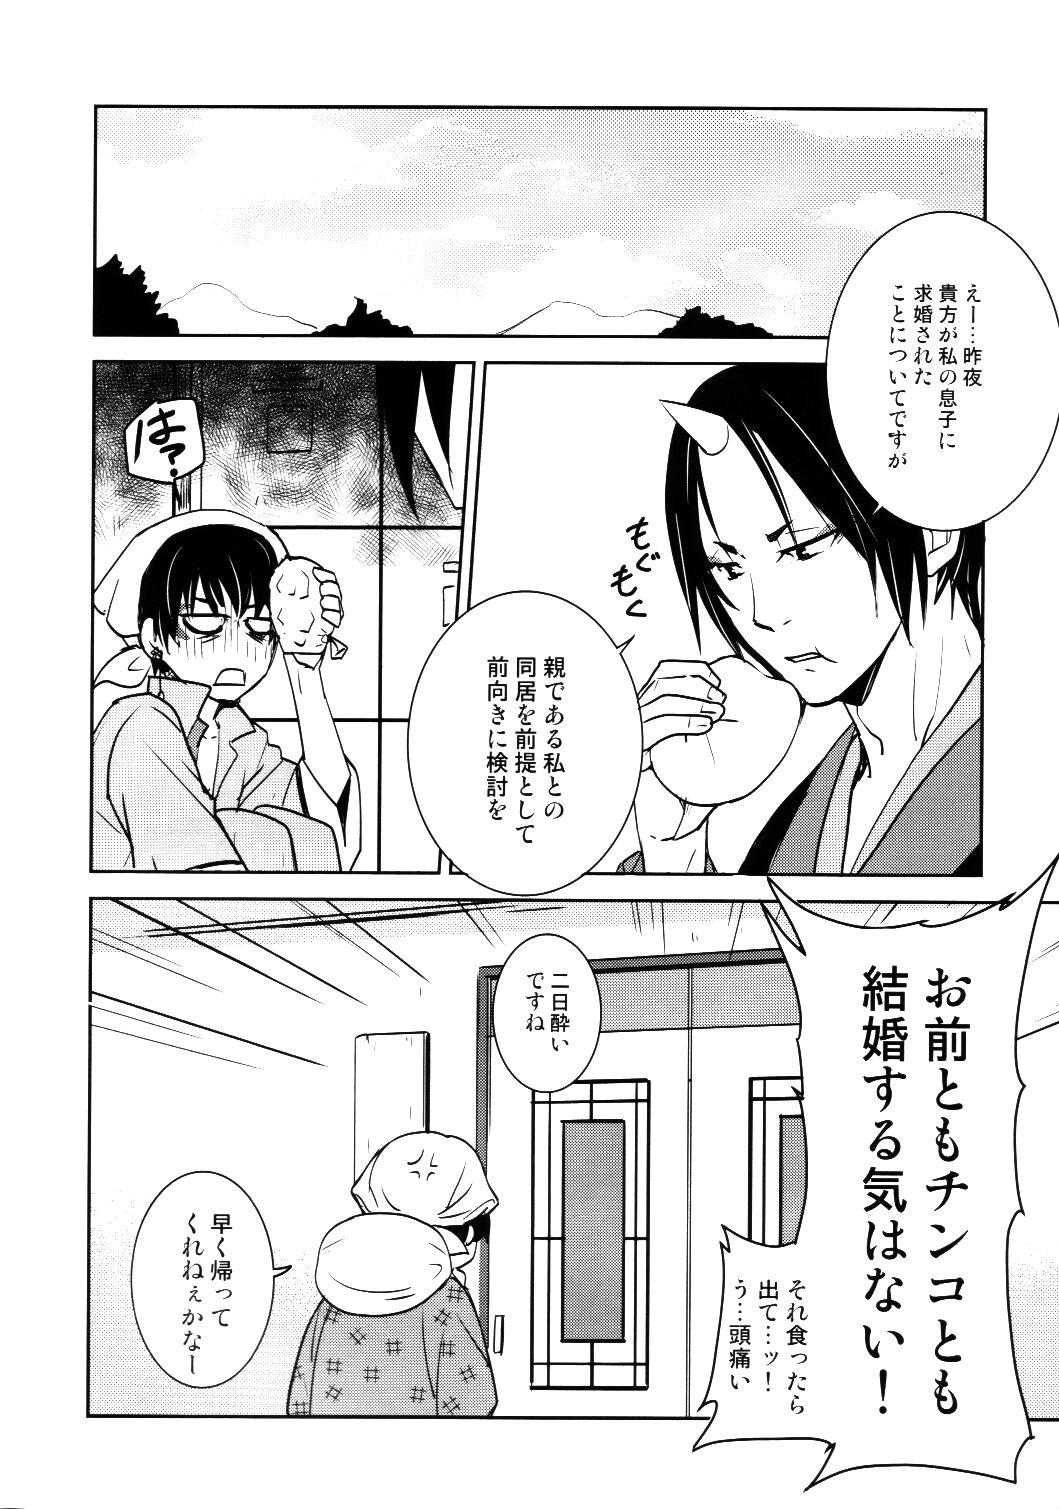 Young Honjitsu gentei! Hosa-kan no yome - Hoozuki no reitetsu Pica - Page 21